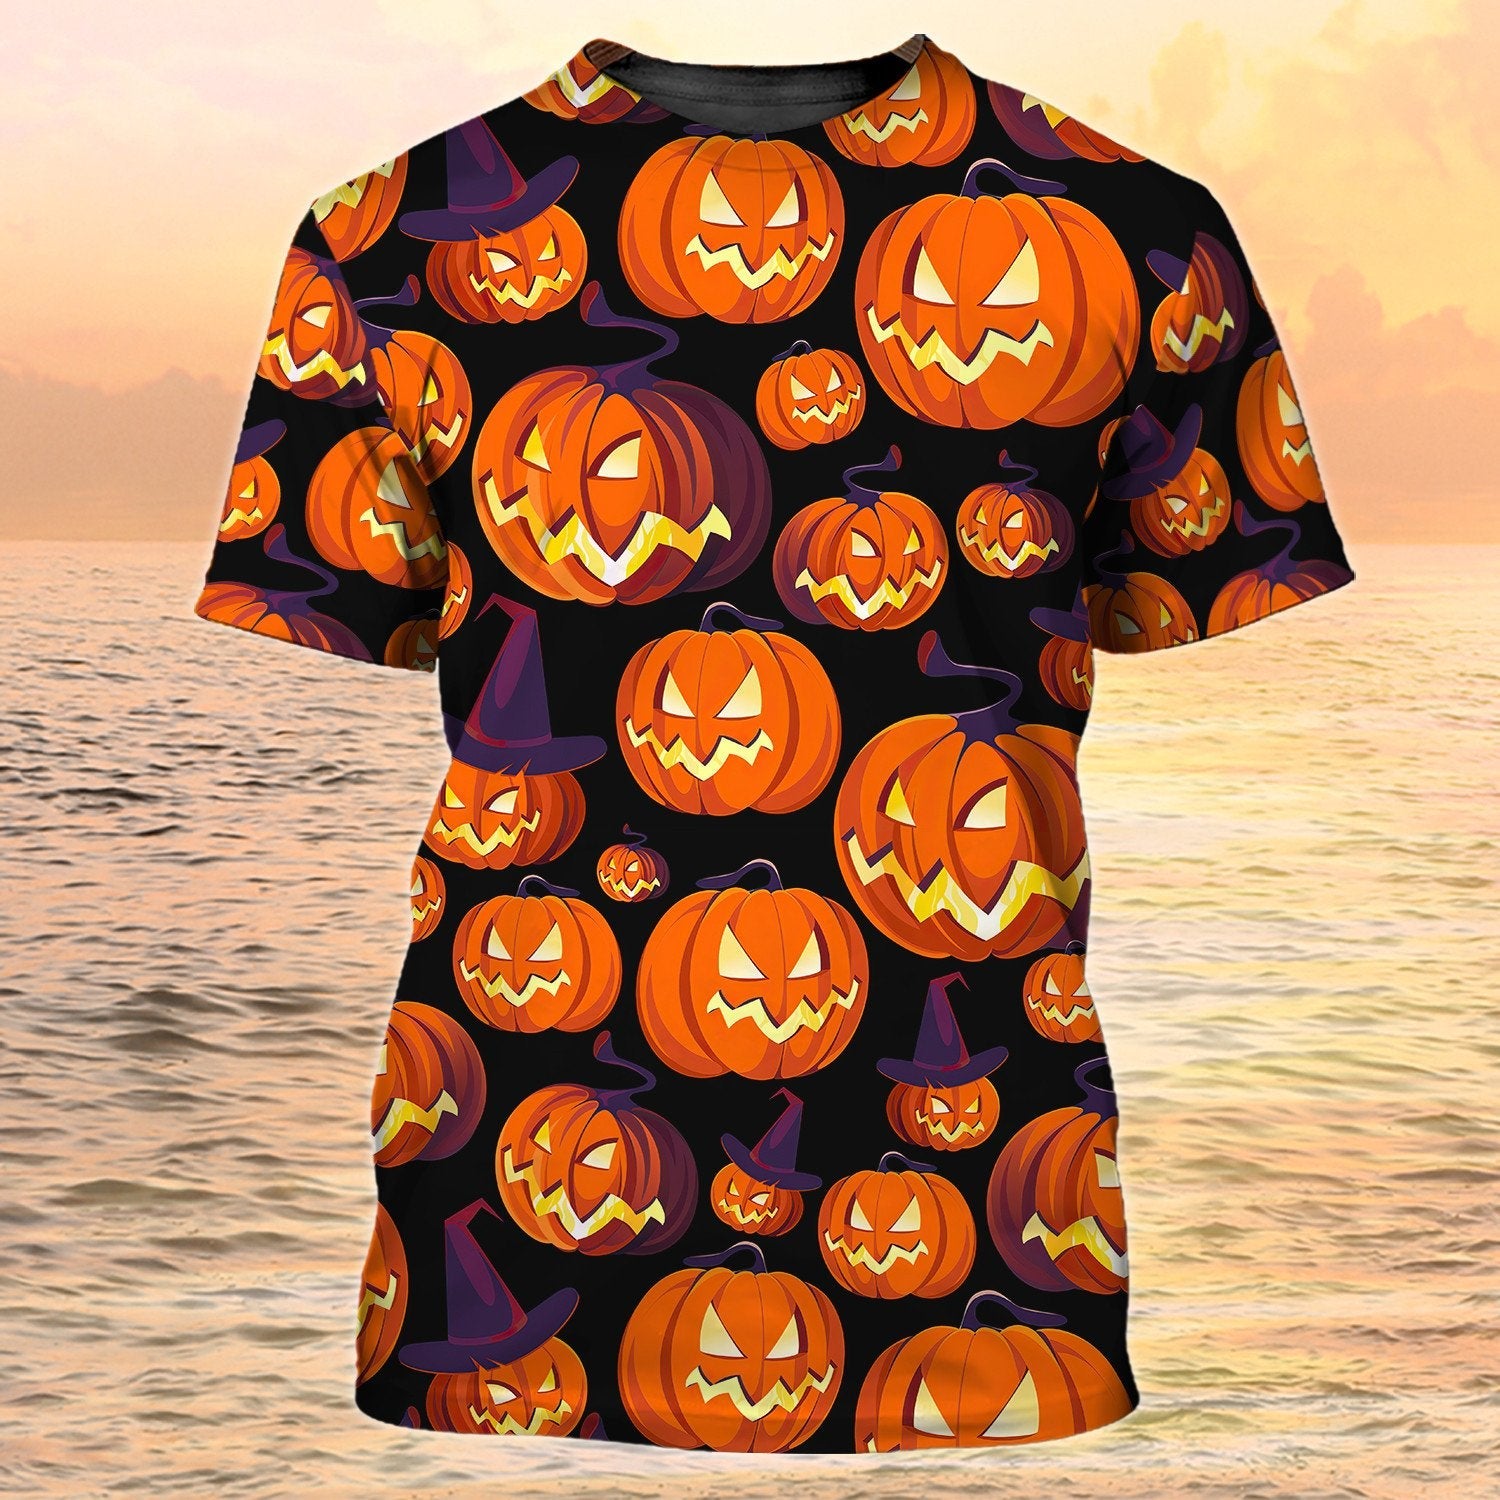 3D Full Of Pumpkin On Shirt Halloween Pumpkin Shirt Men Women